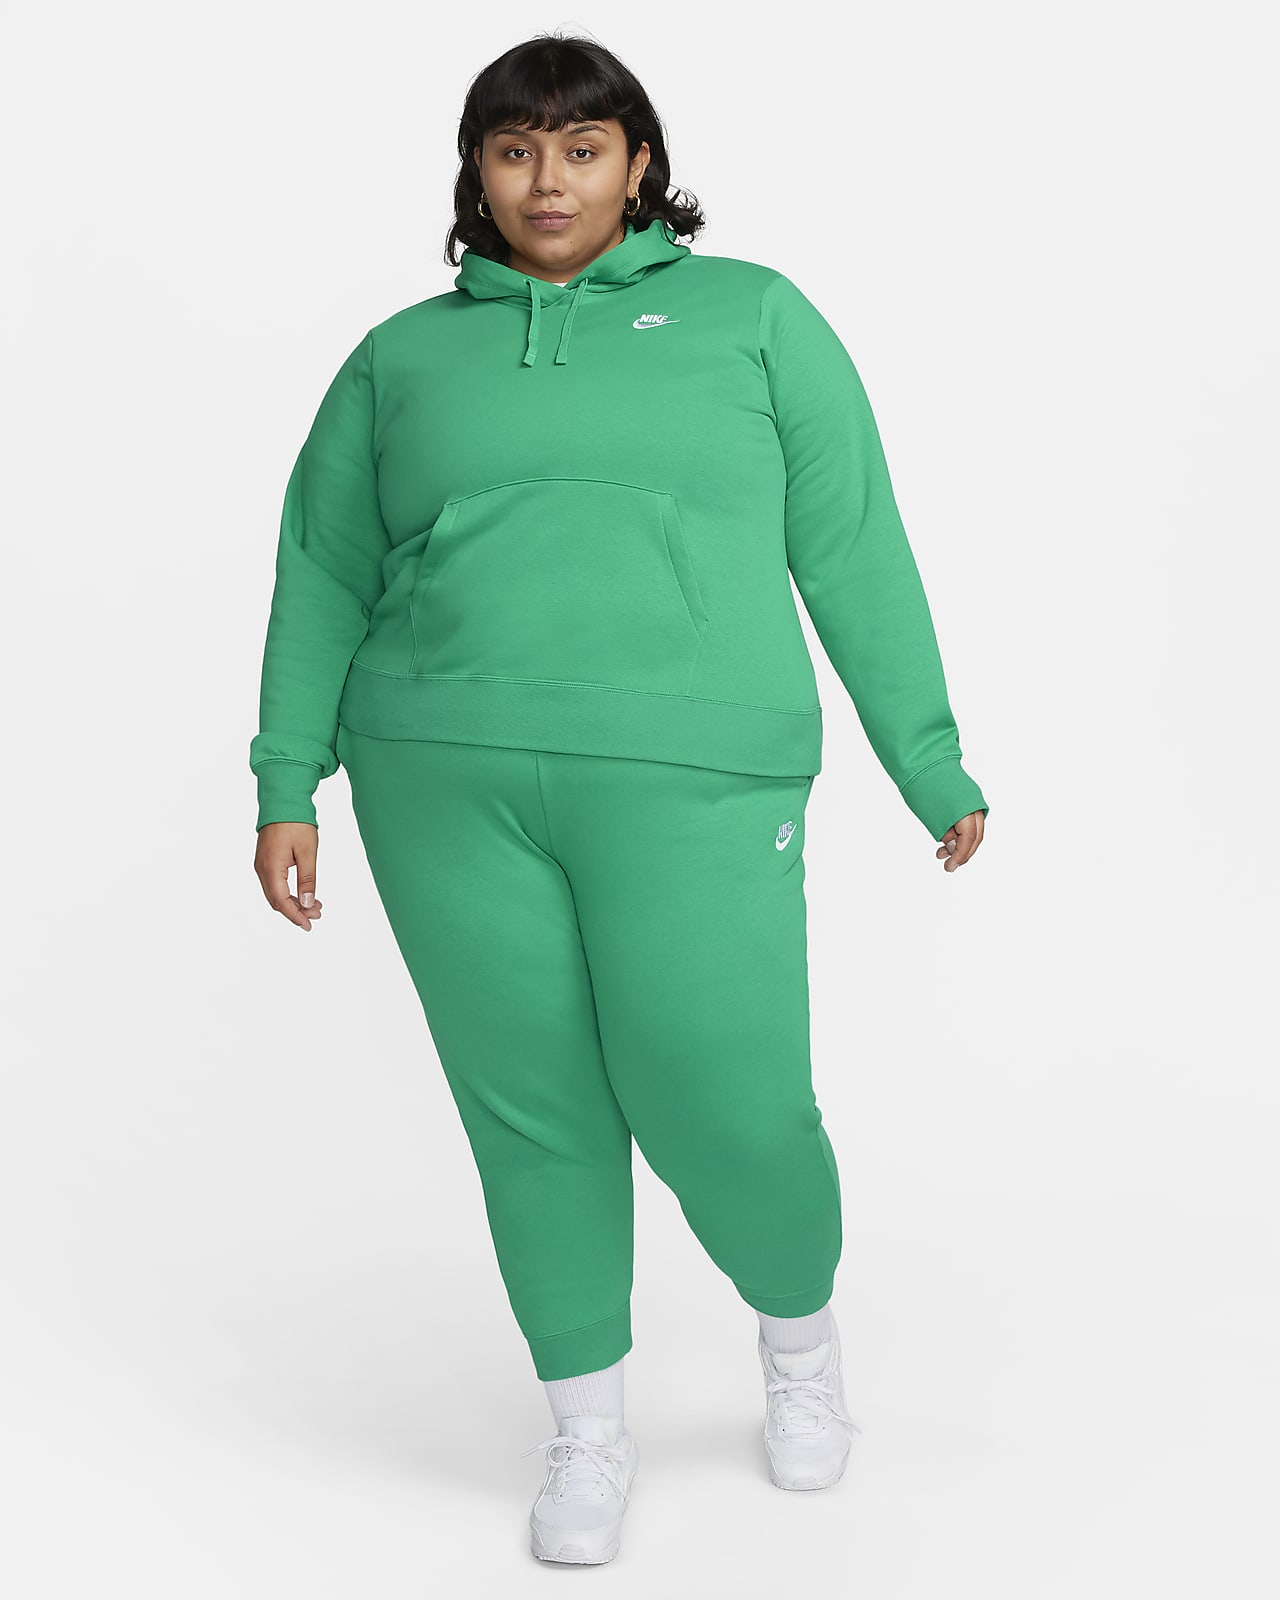 Nike Sportswear Club Fleece Women's Pullover Hoodie (Plus Size)